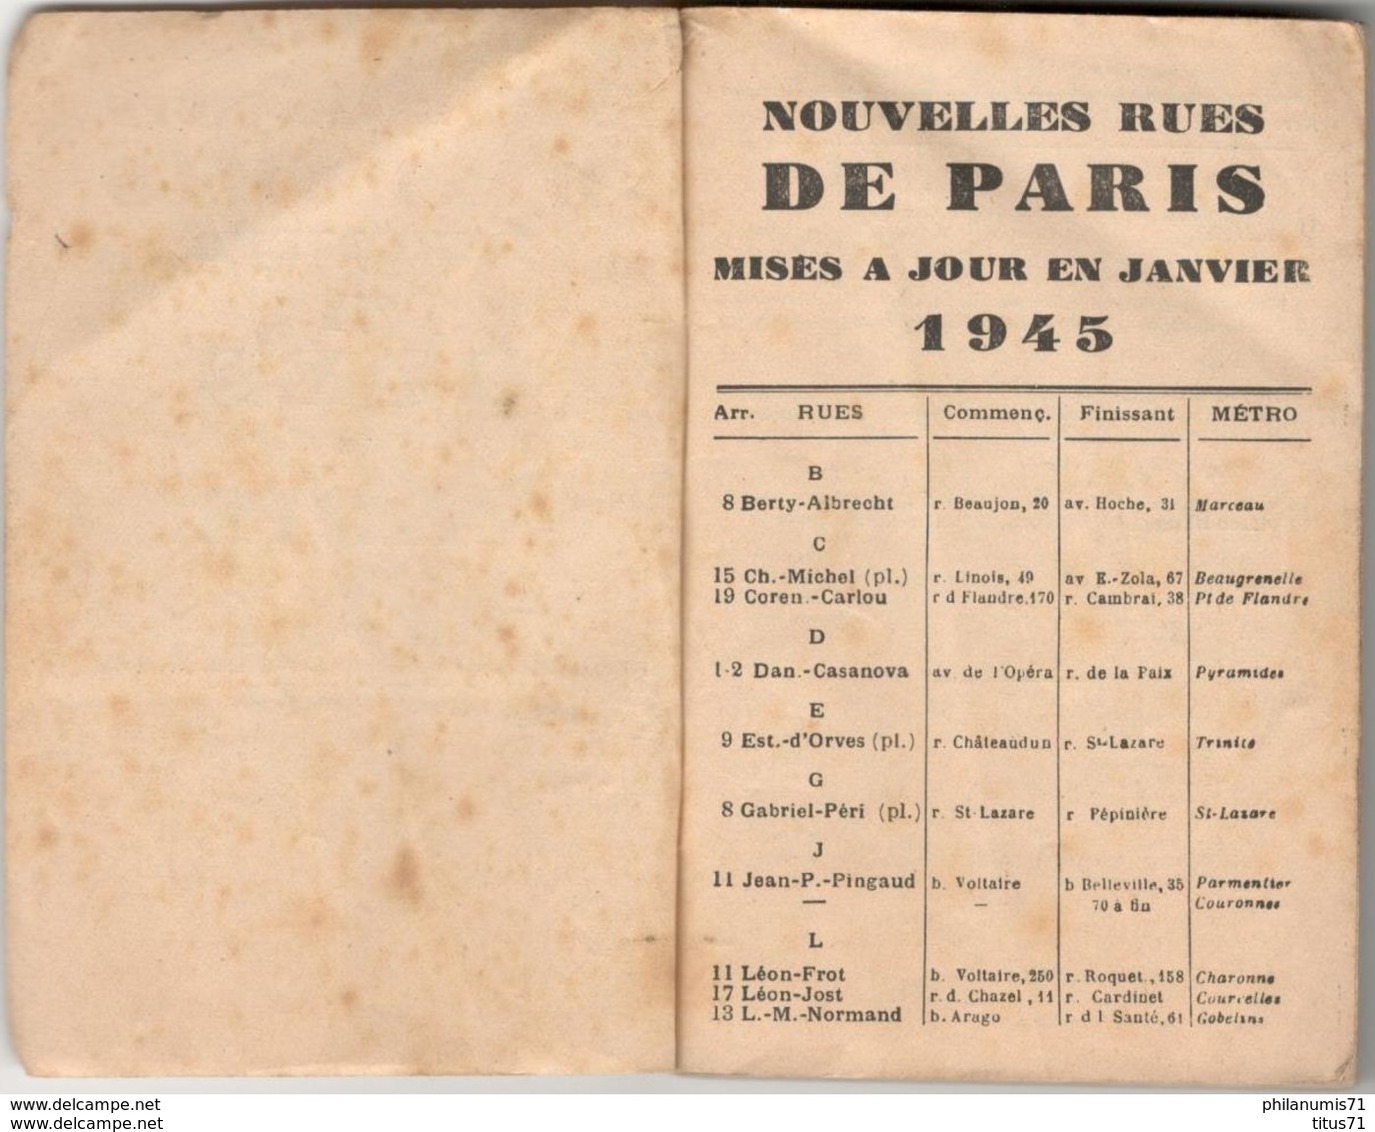 Indicateur Des Rues De Paris Métro Autobus - Nouvelles Rues De Paris Mises à Jour En 1945 - Europe